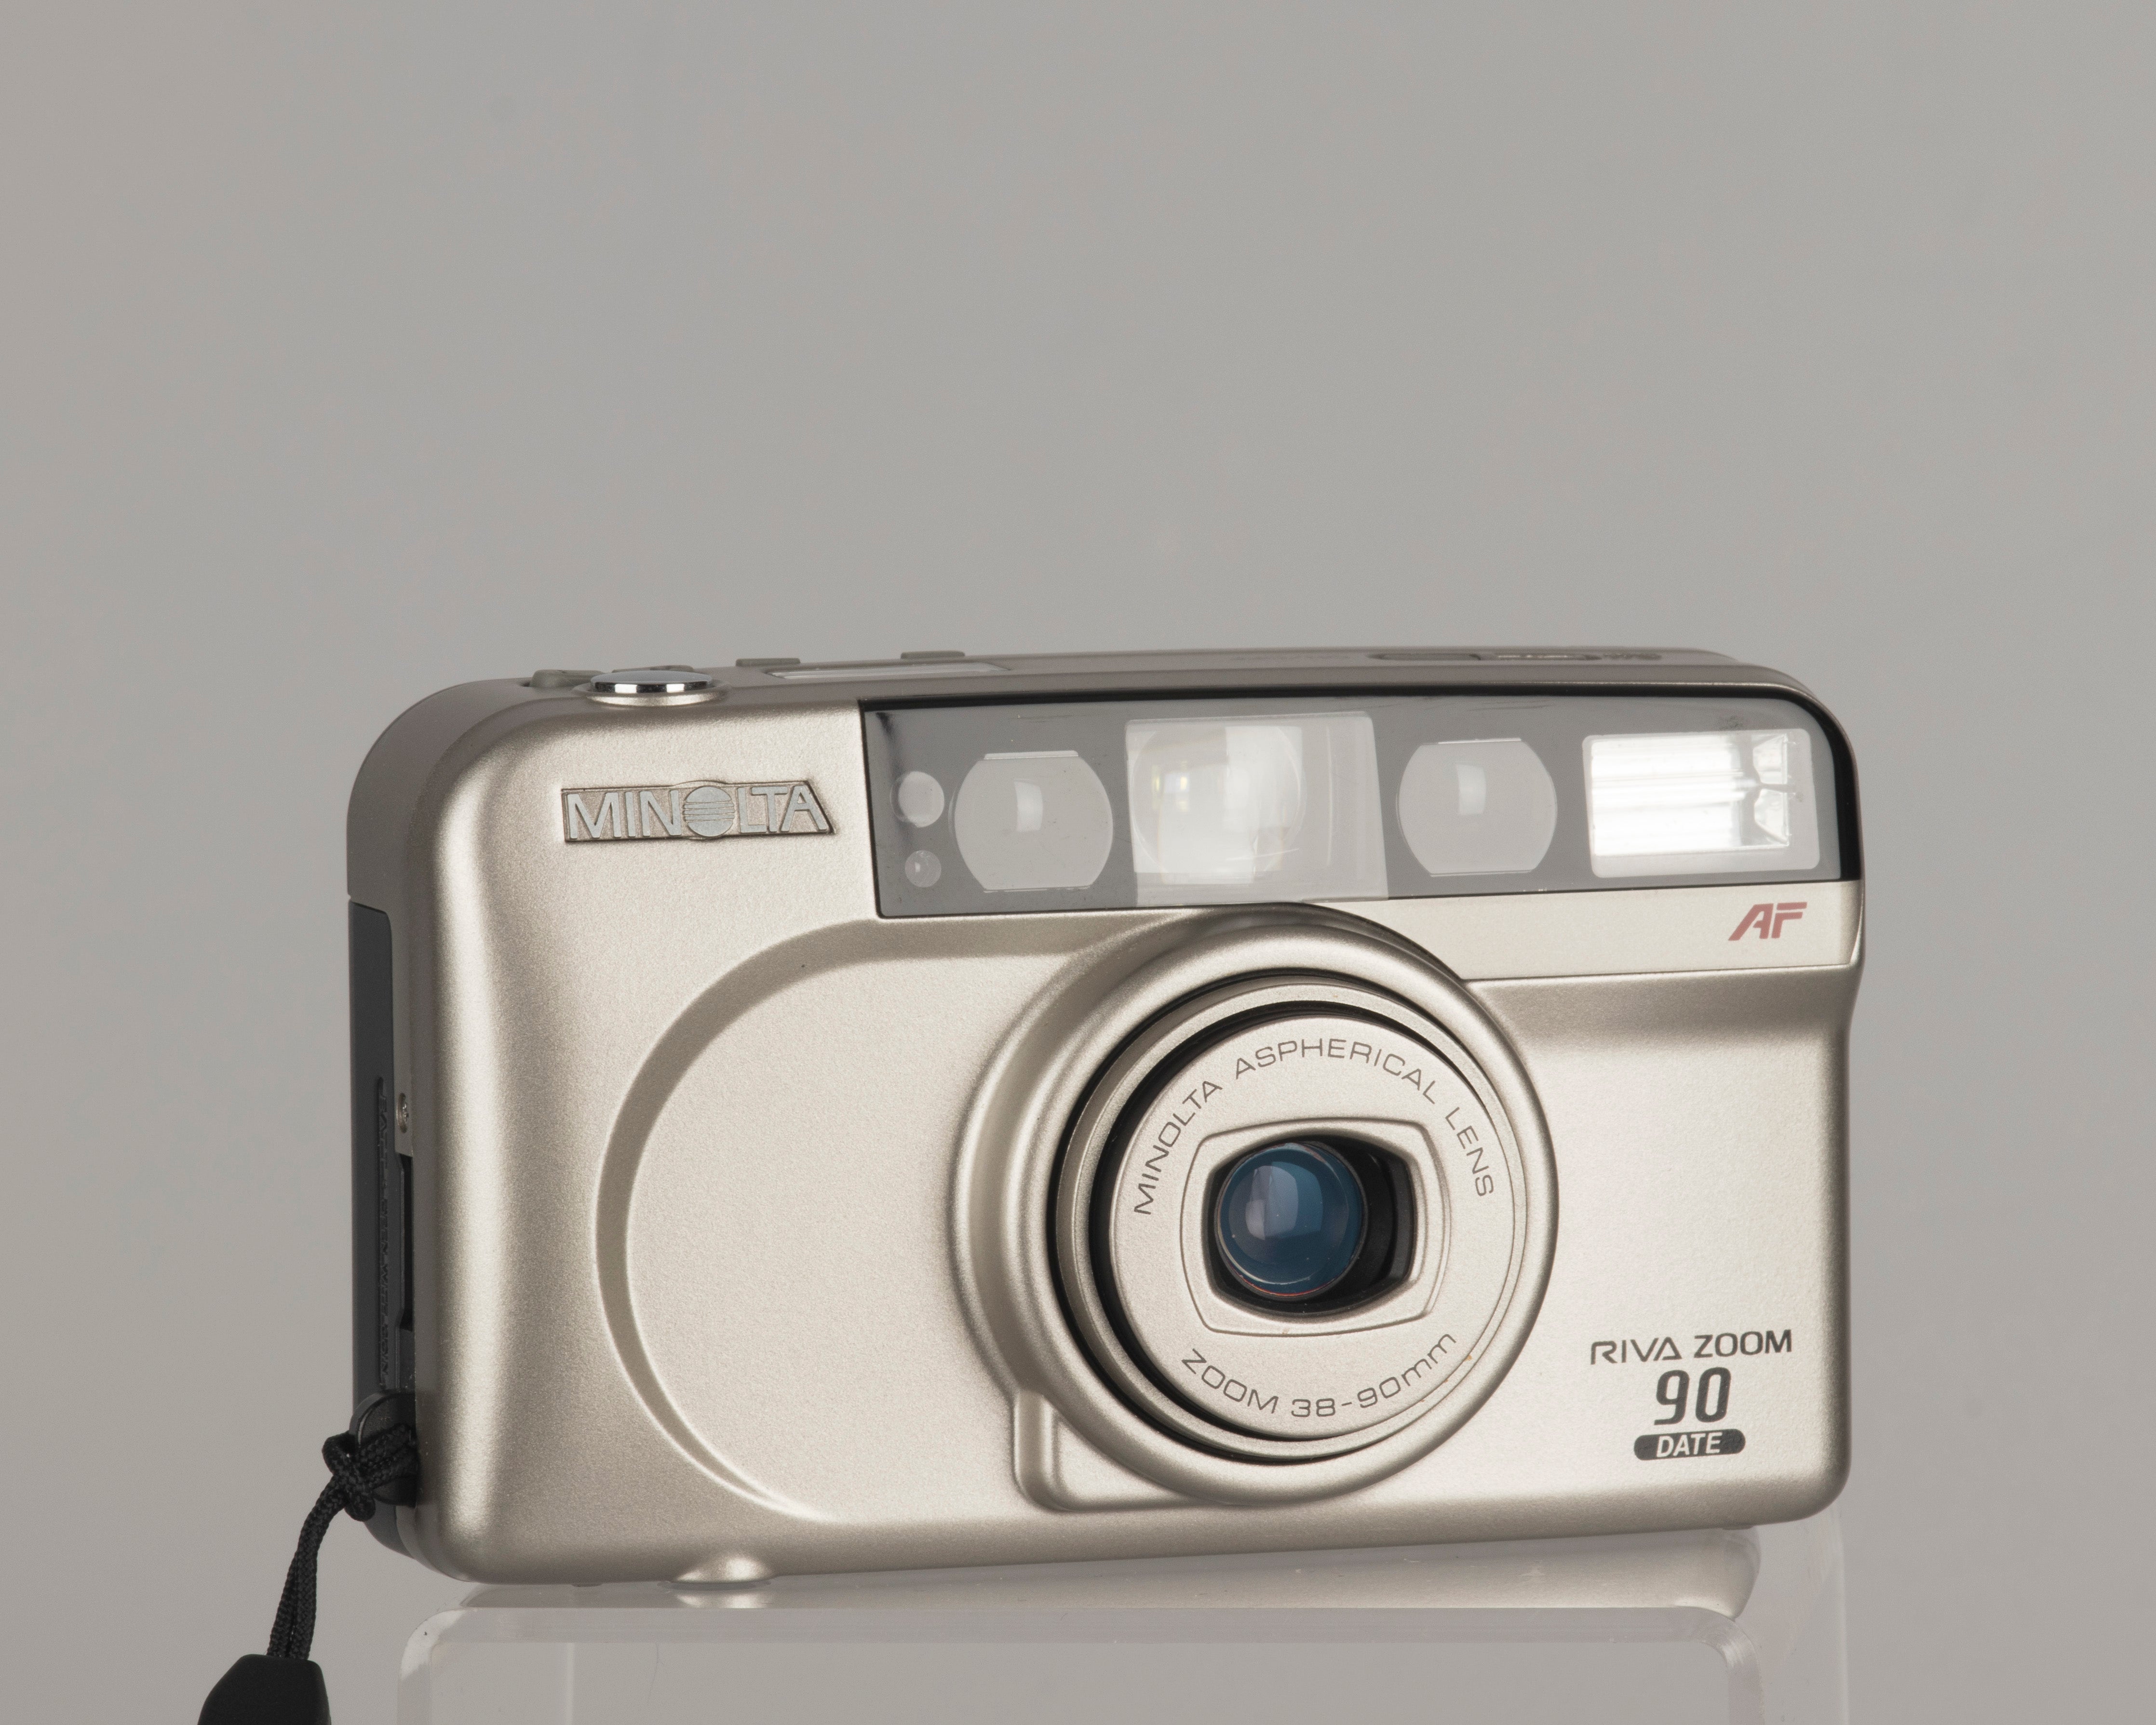 Minolta Riva Zoom 90 Date 35mm camera with original box, case and manu